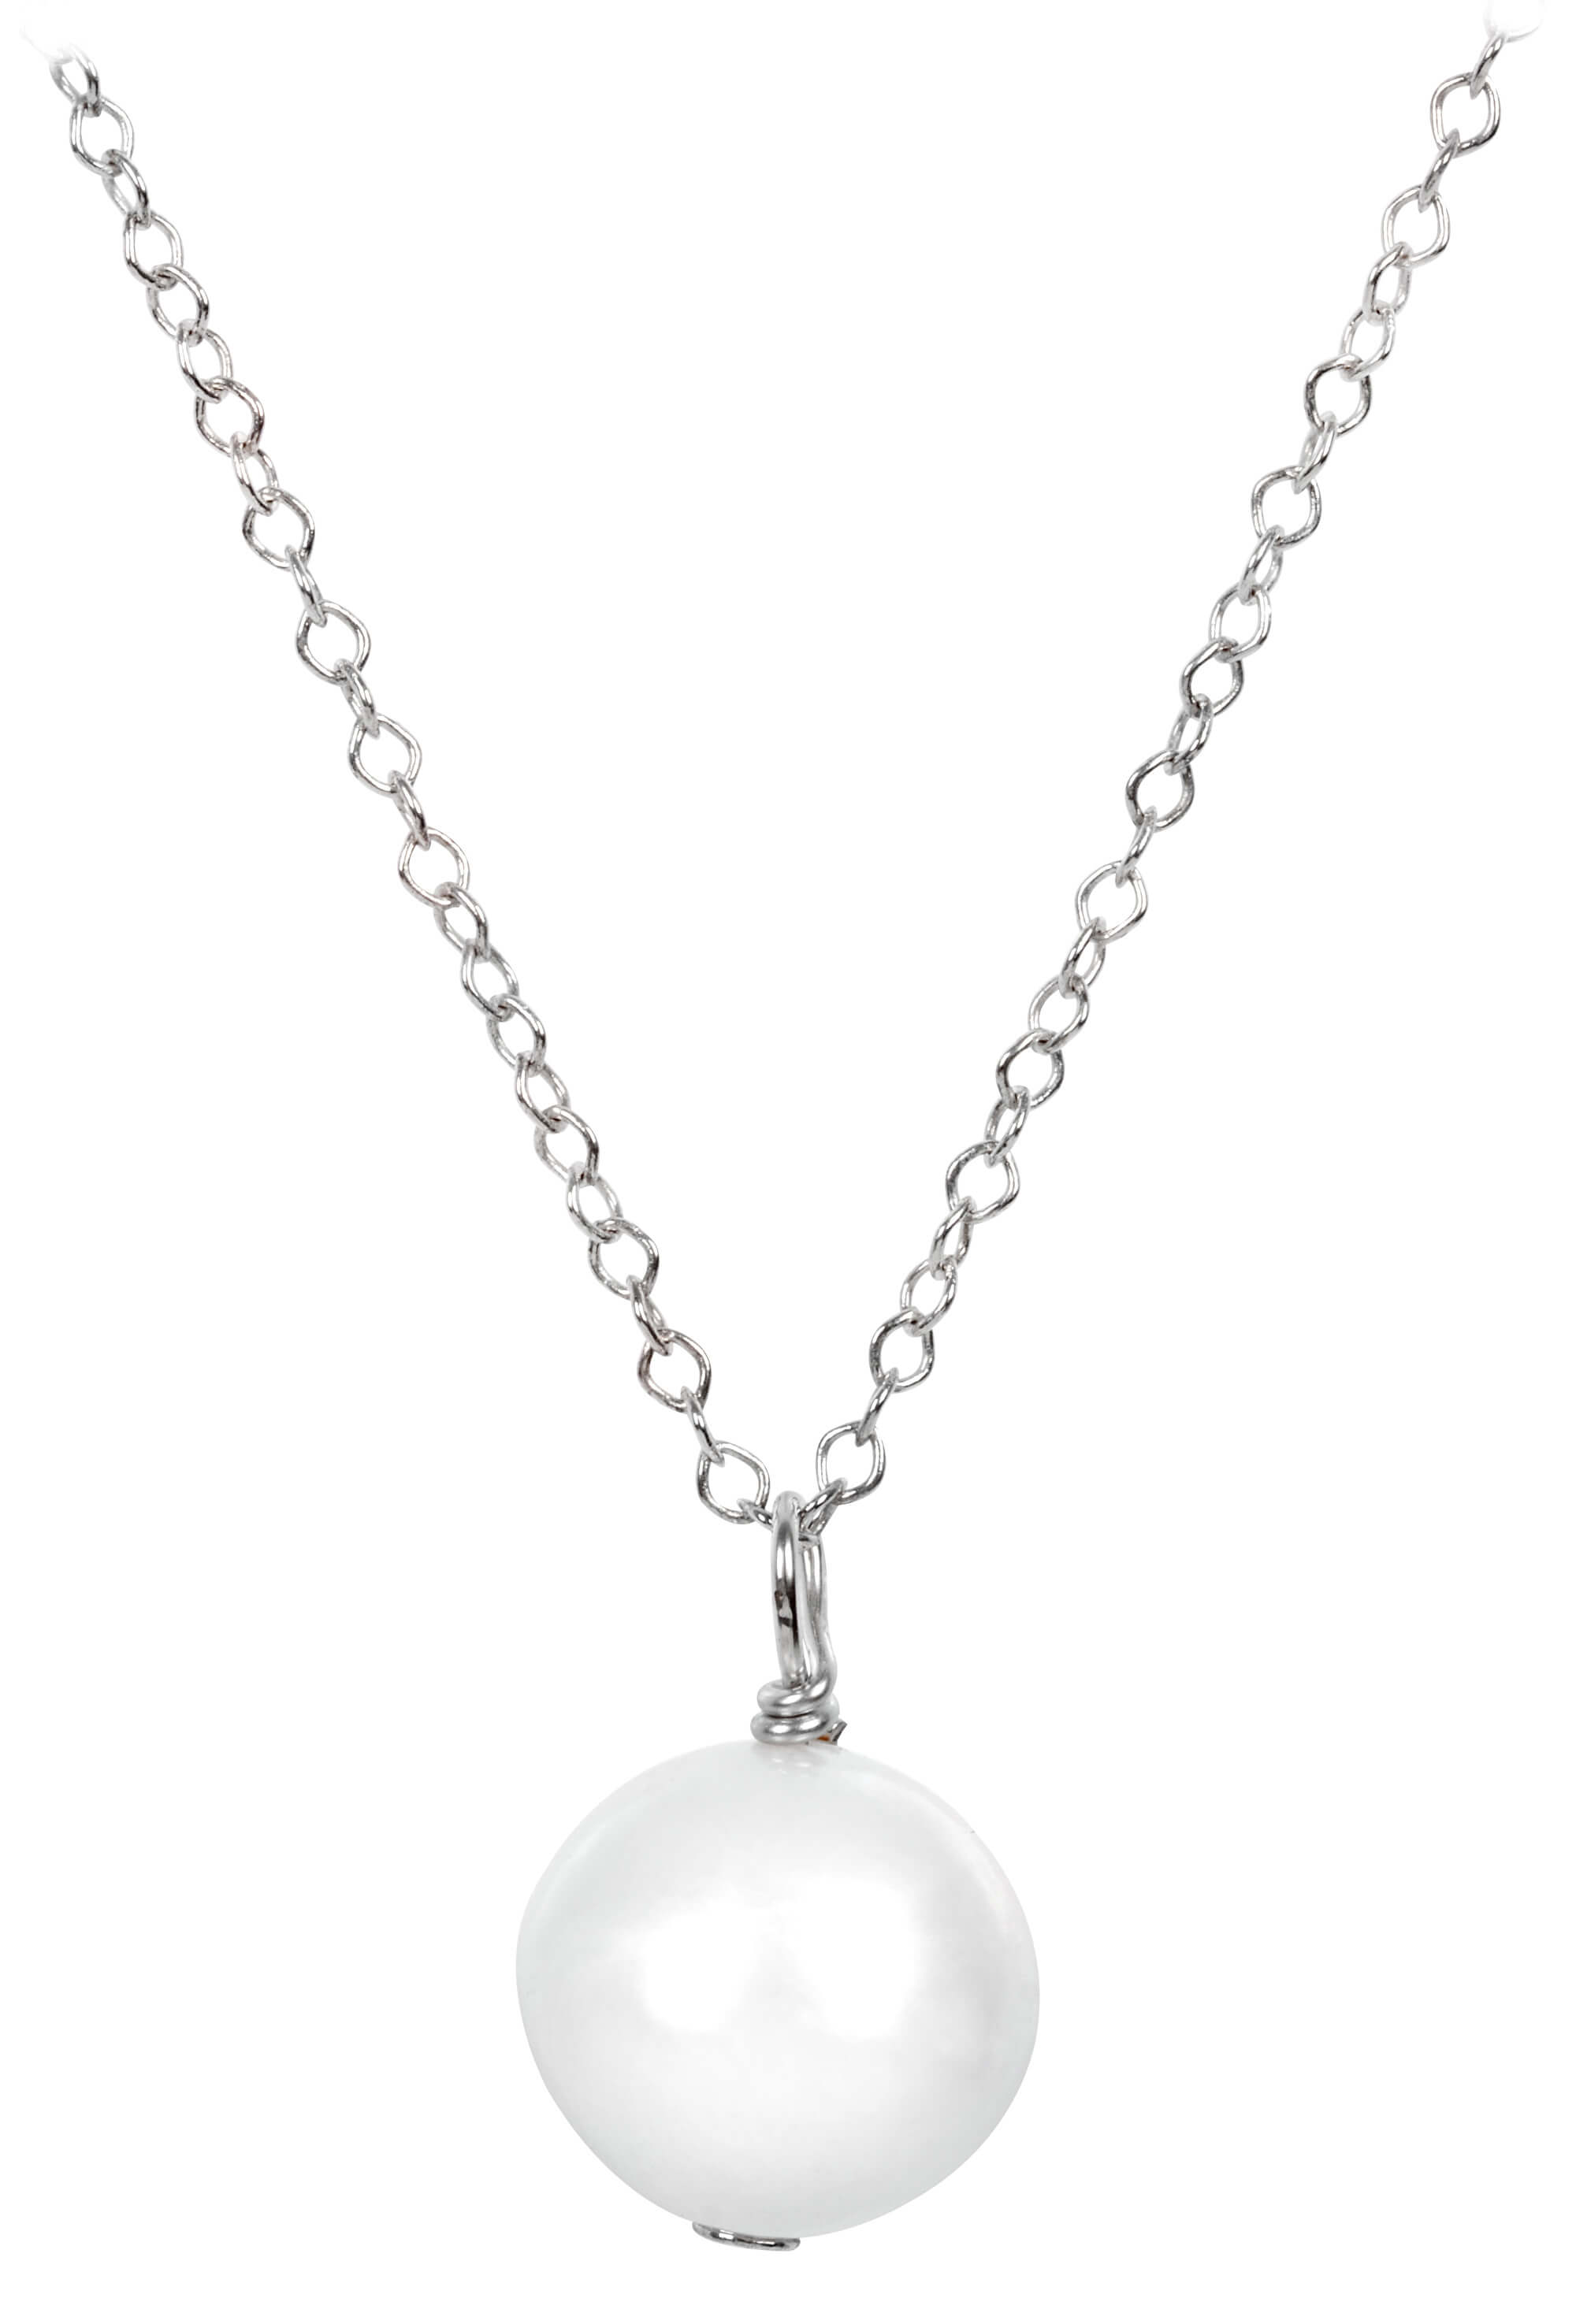 JwL Luxury Pearls -  Pravá perla bílé barvy na stříbrném řetízku JL0087 (řetízek, přívěsek)